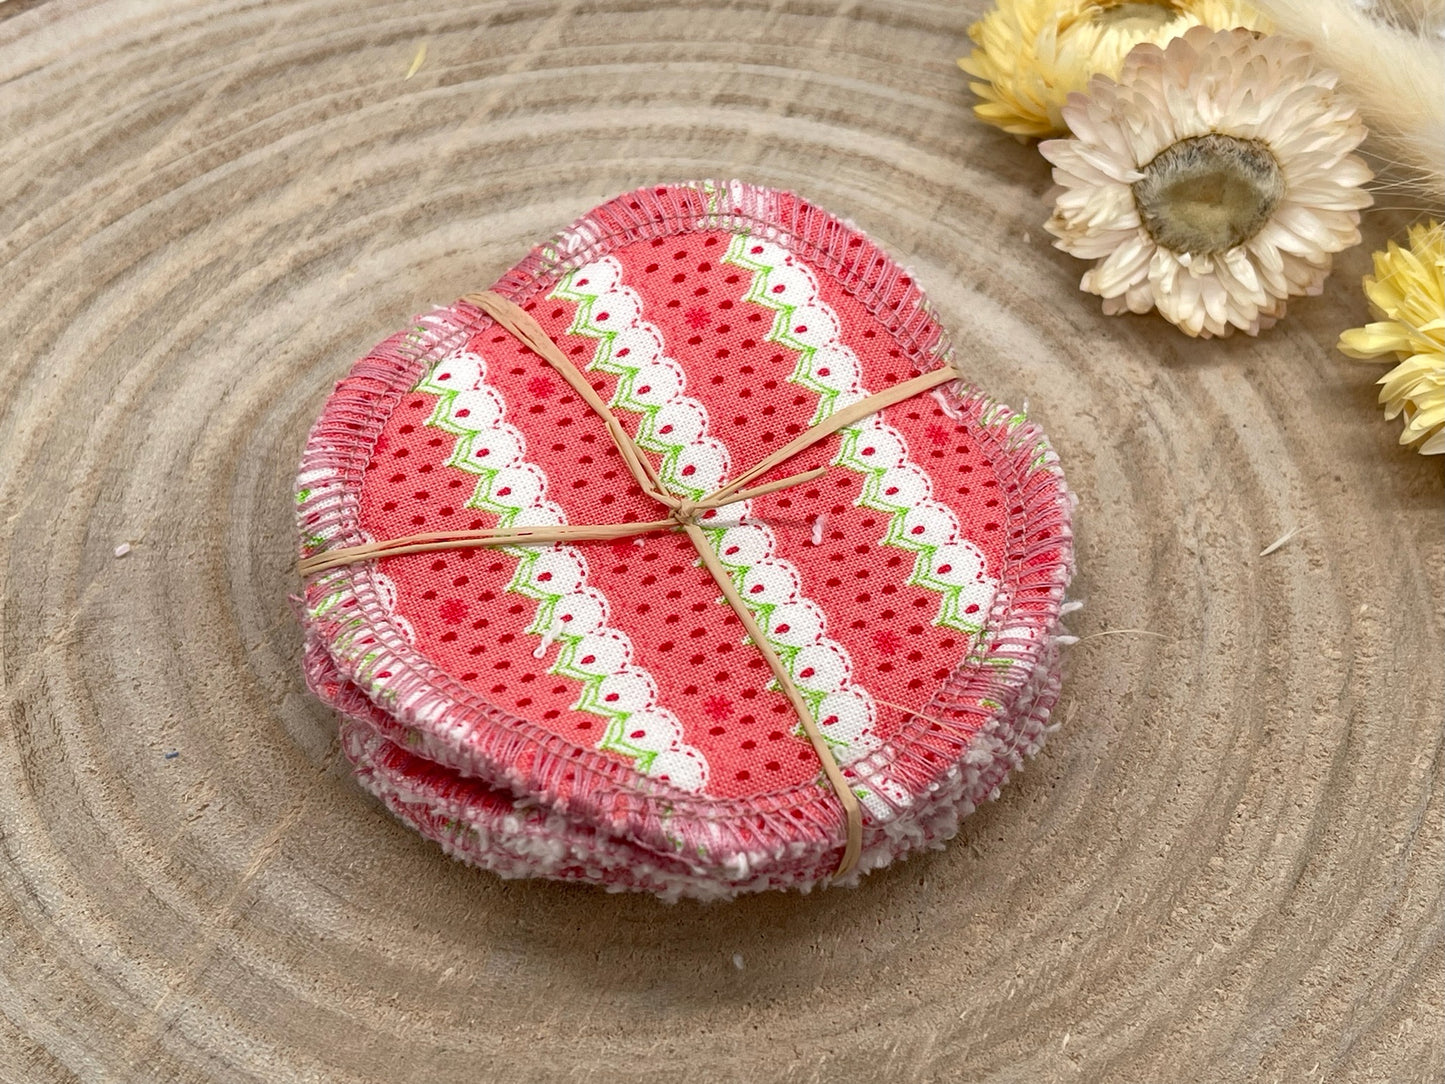 5 waschbare Abschminkpads Erdbeere Muster rosa/weiss